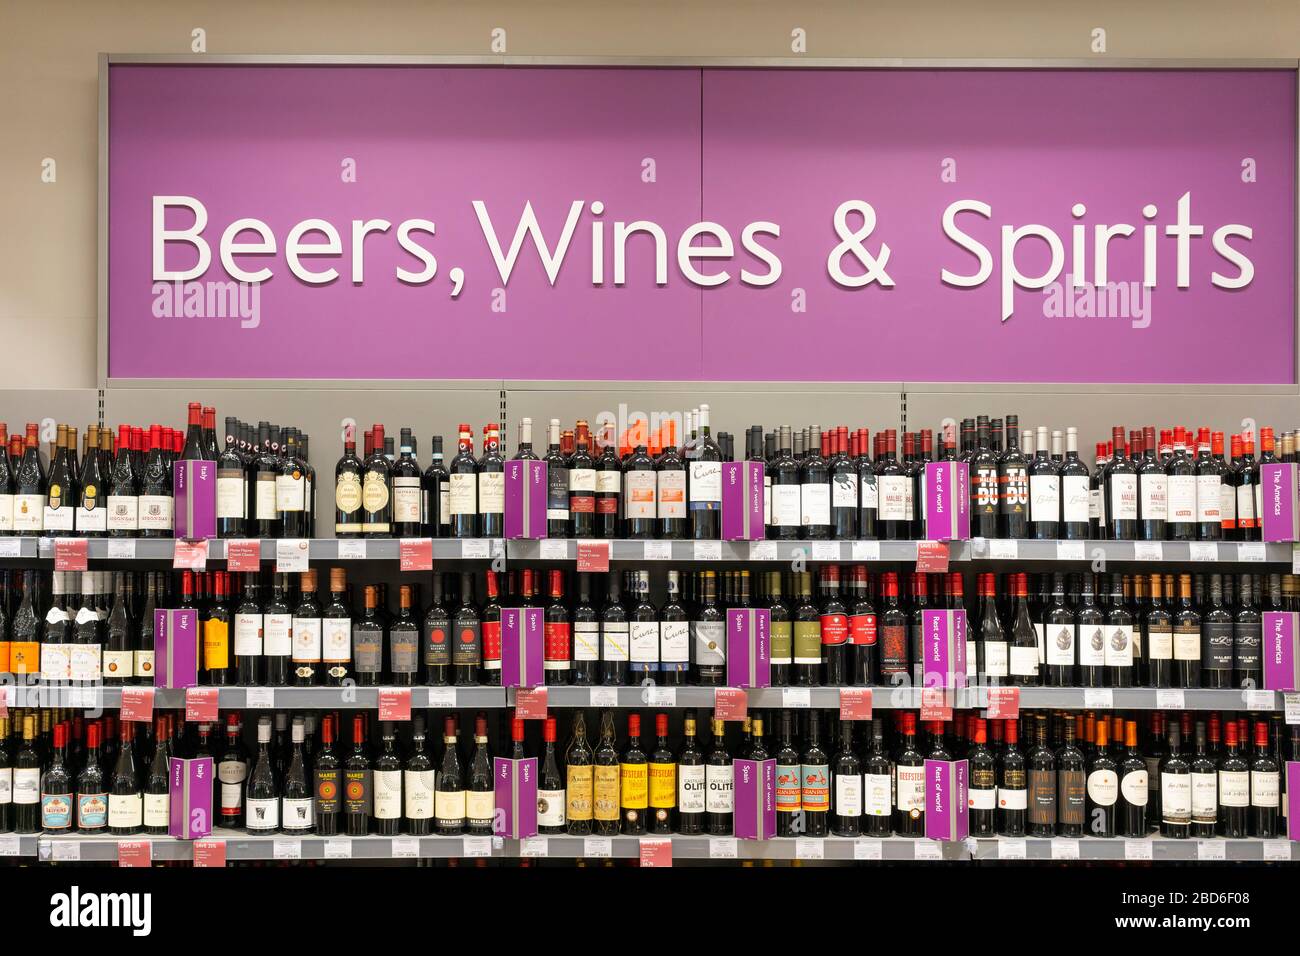 Ein großes Schild, das Bier, Wein und Spirituosen, mit Weinflaschen unten im Waitrose Supermarkt, Großbritannien, anwirbt Stockfoto